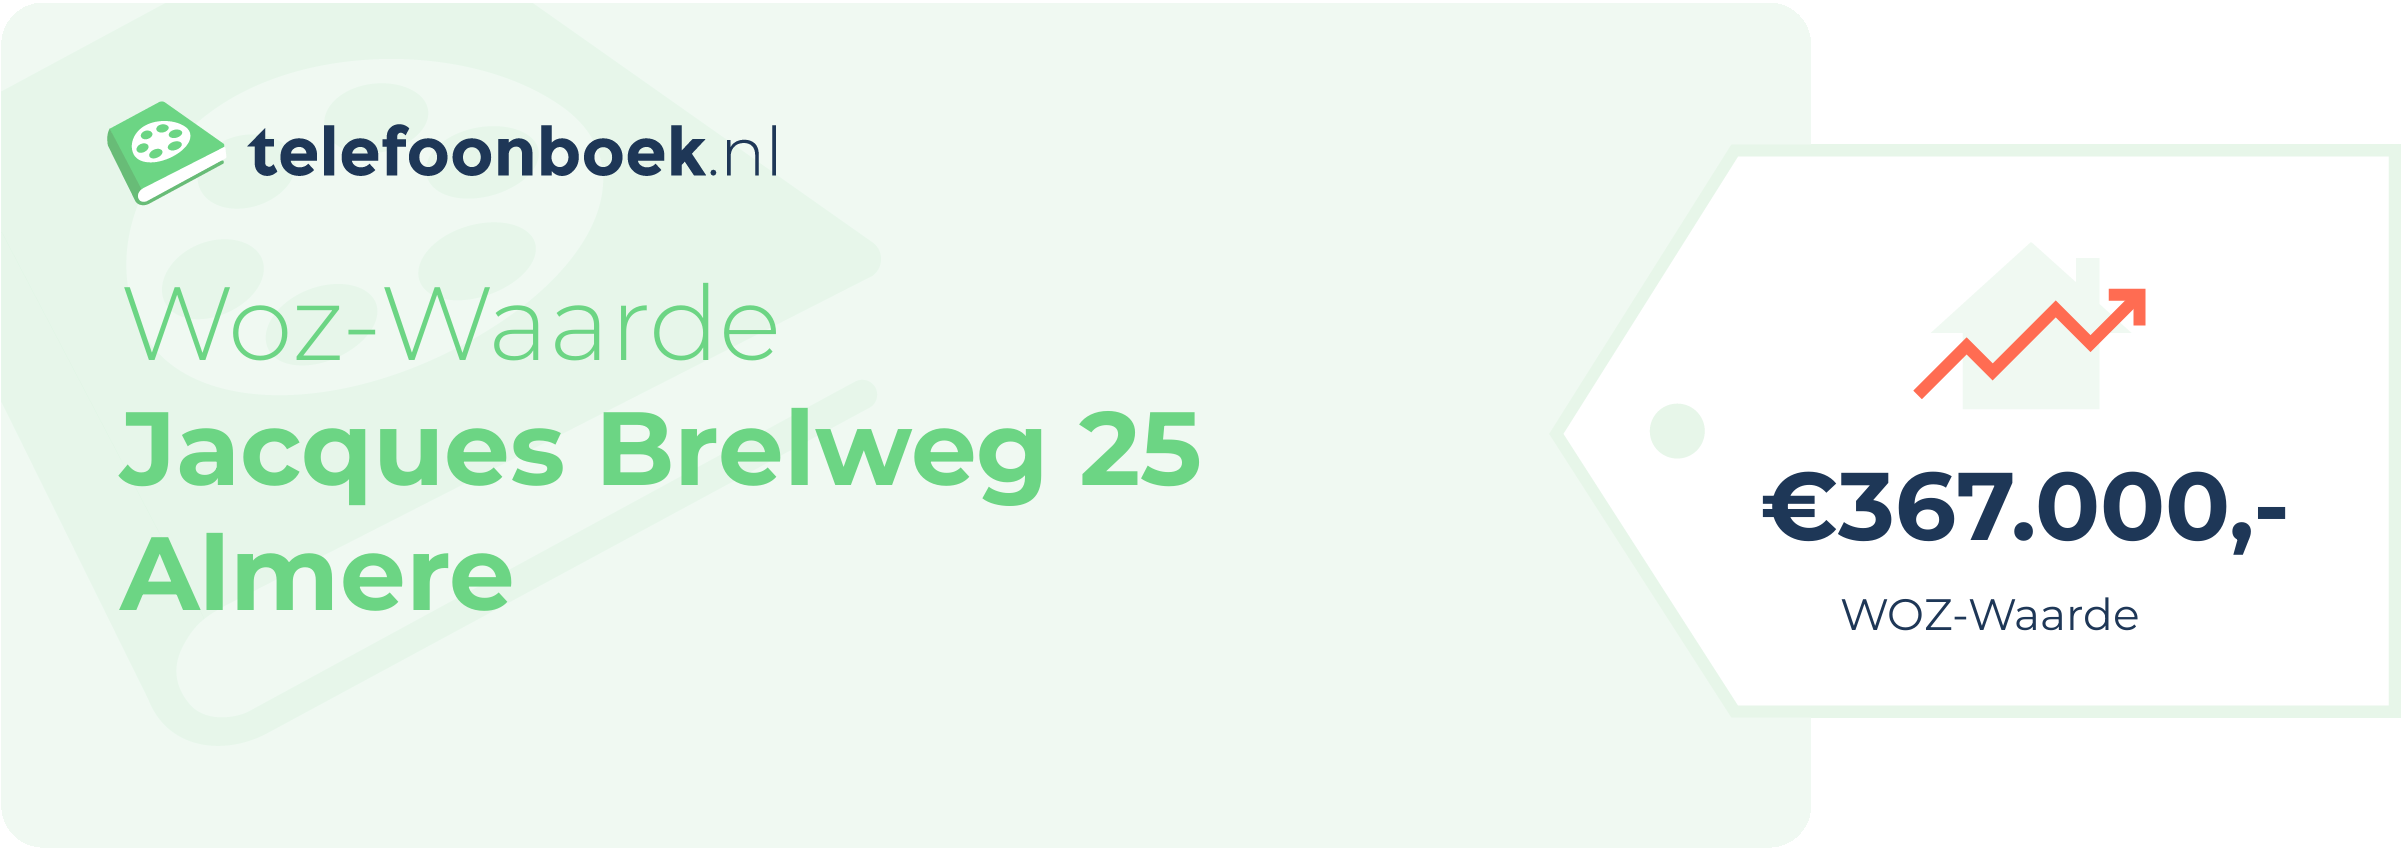 WOZ-waarde Jacques Brelweg 25 Almere